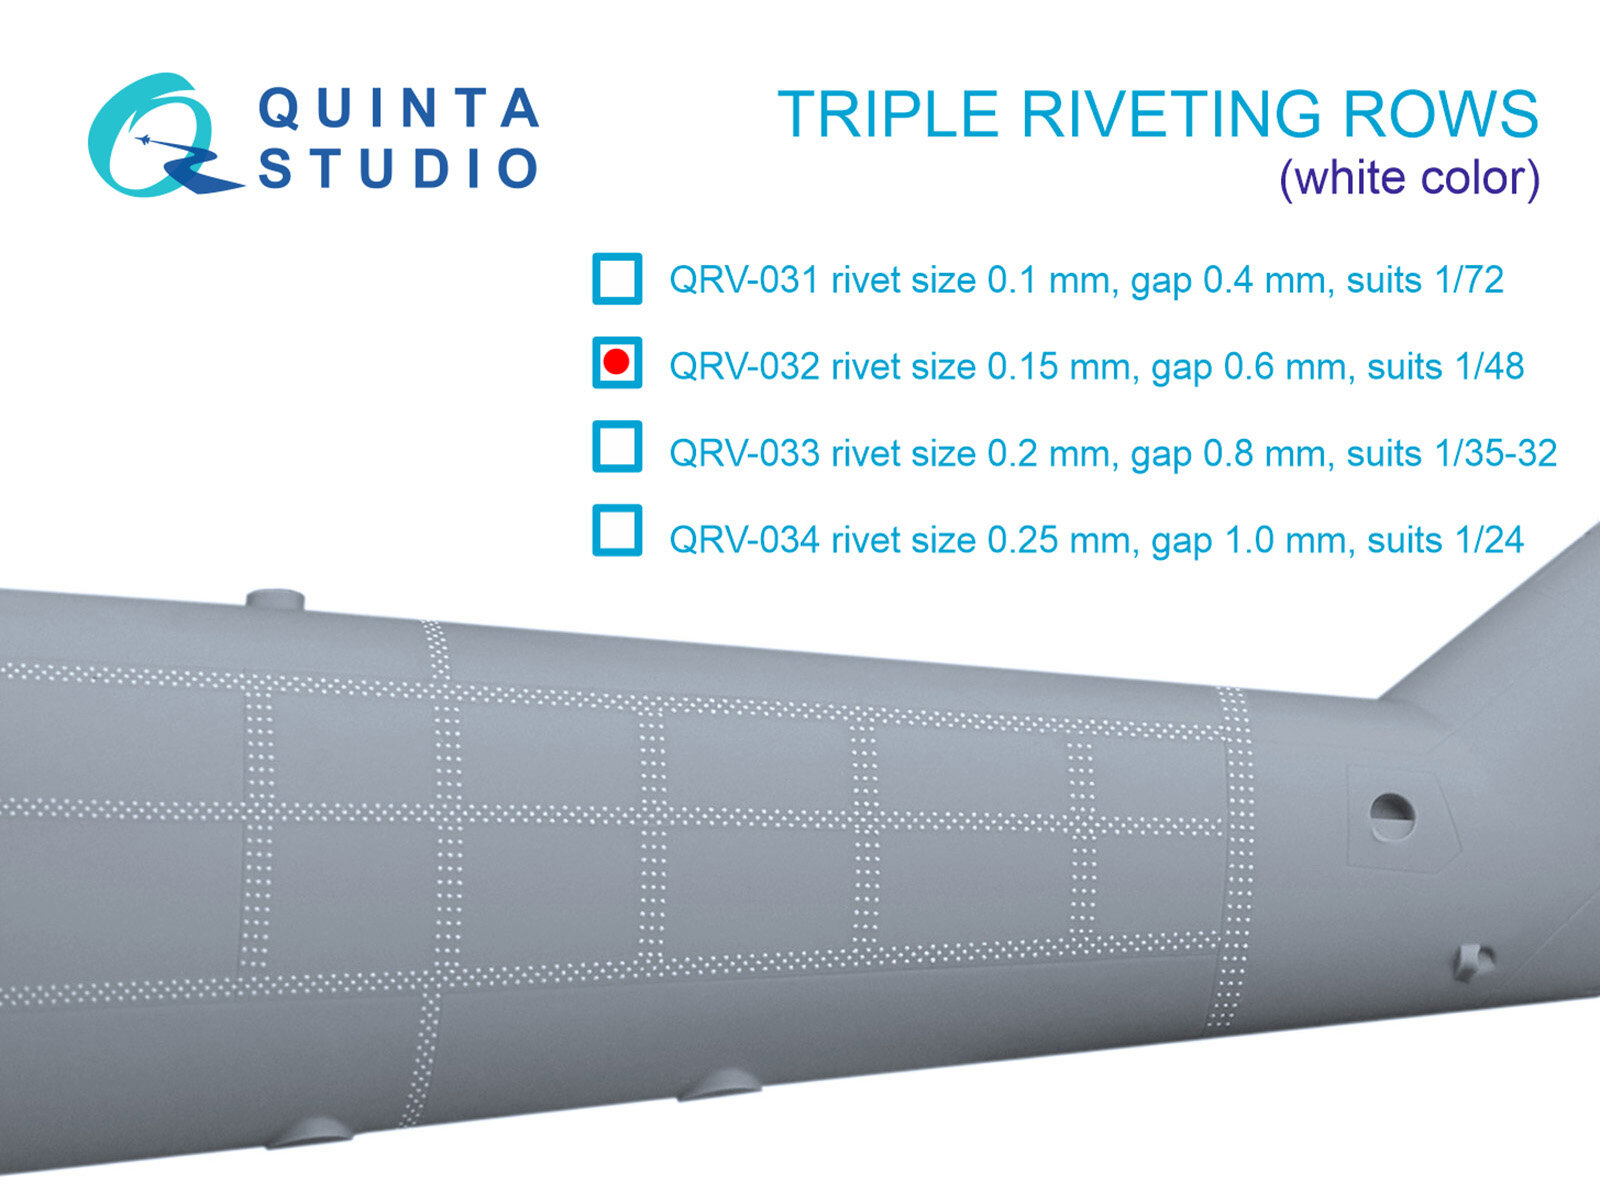 QRV-032 Тройные клепочные ряды (размер клепки 0.15 mm интервал 0.6 mm масштаб 1/48) белыеобщая длина 4.4